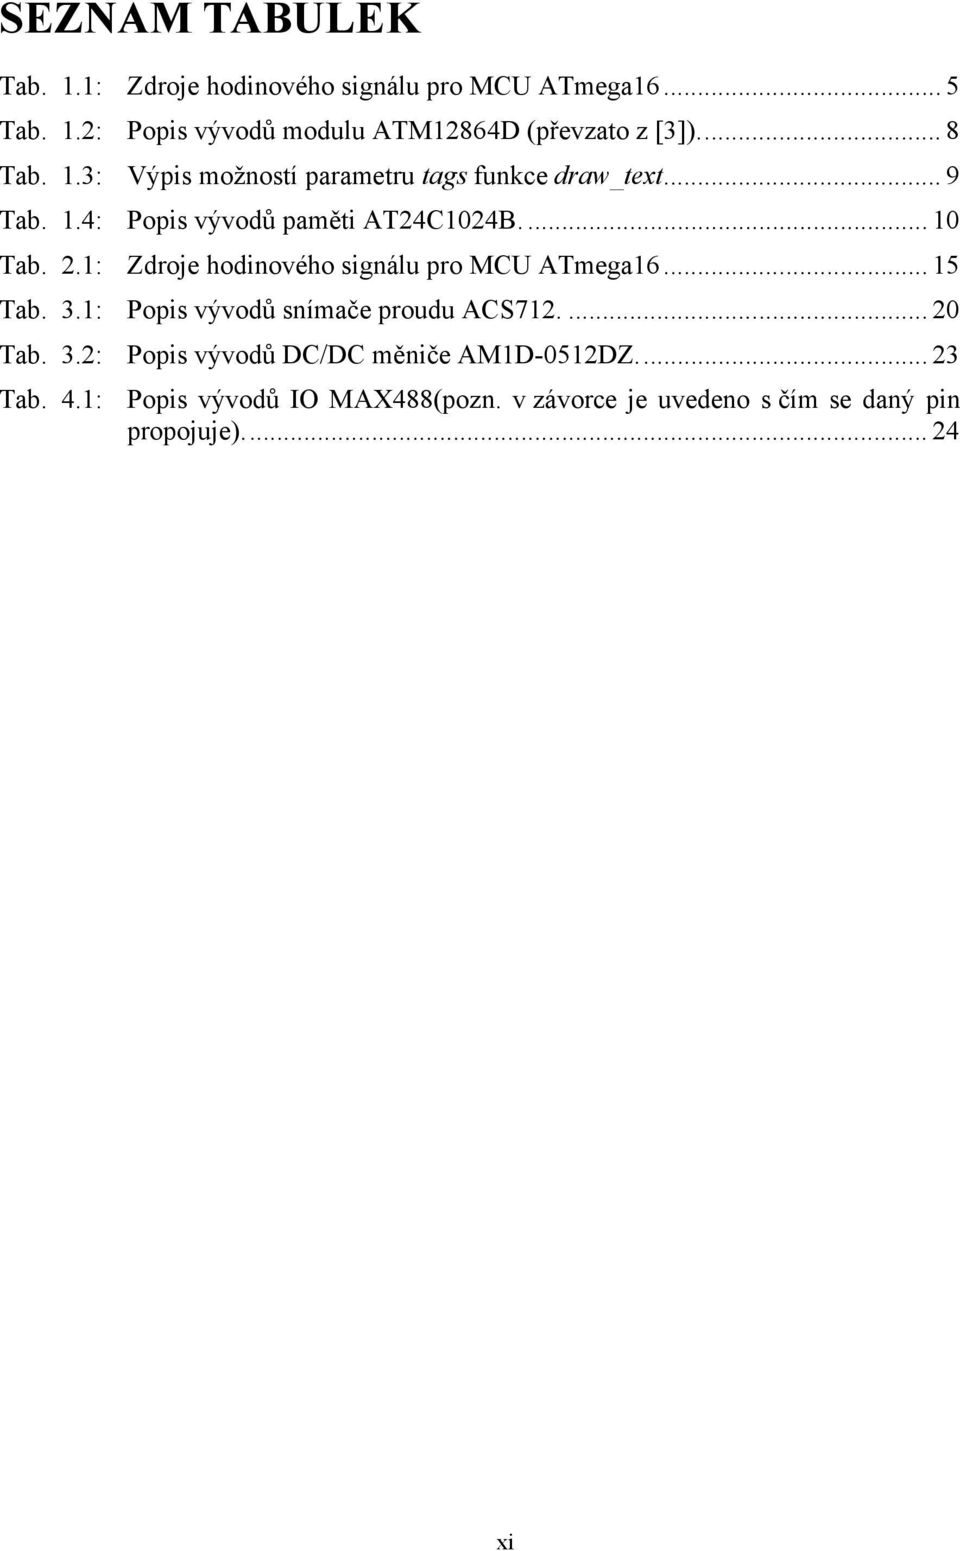 1: Zdroje hodinového signálu pro MCU ATmega16... 15 Tab. 3.1: Popis vývodů snímače proudu ACS712.... 20 Tab. 3.2: Popis vývodů DC/DC měniče AM1D-0512DZ.